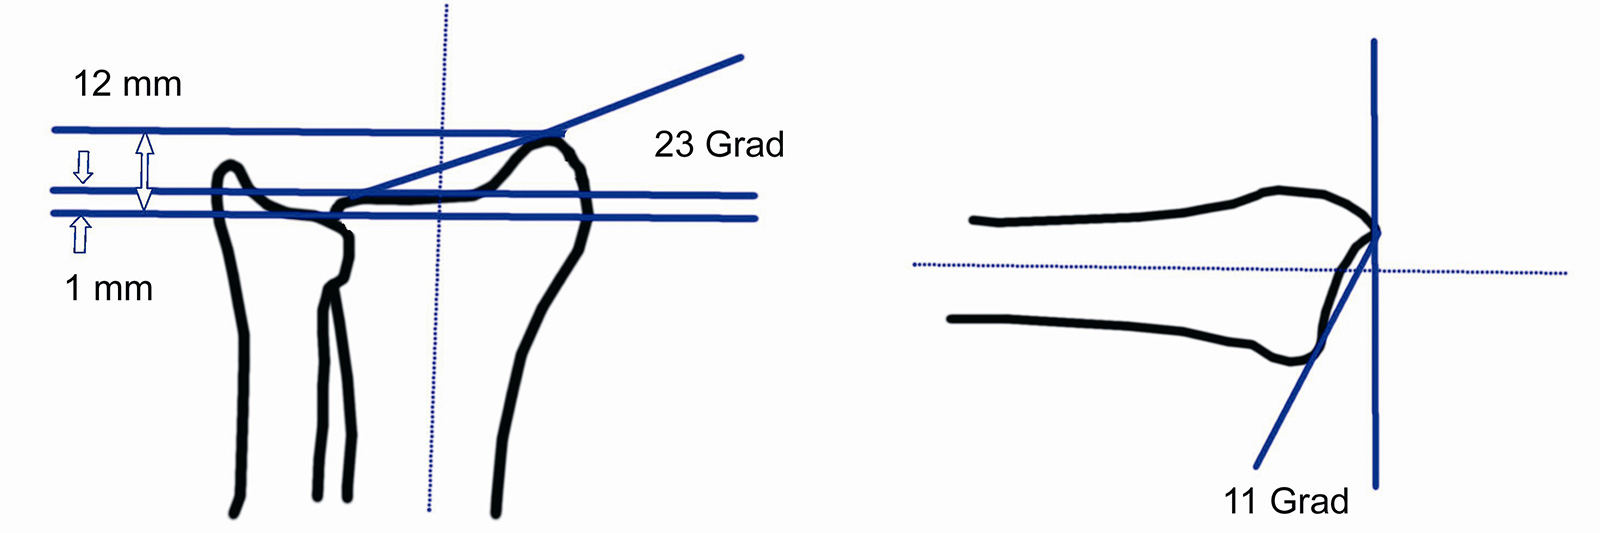 Abb. 3-87: Ausmaß der Ulna-Minus Variante, Ulnarinklination und Palmarinklination der radialen Gelenkfläche